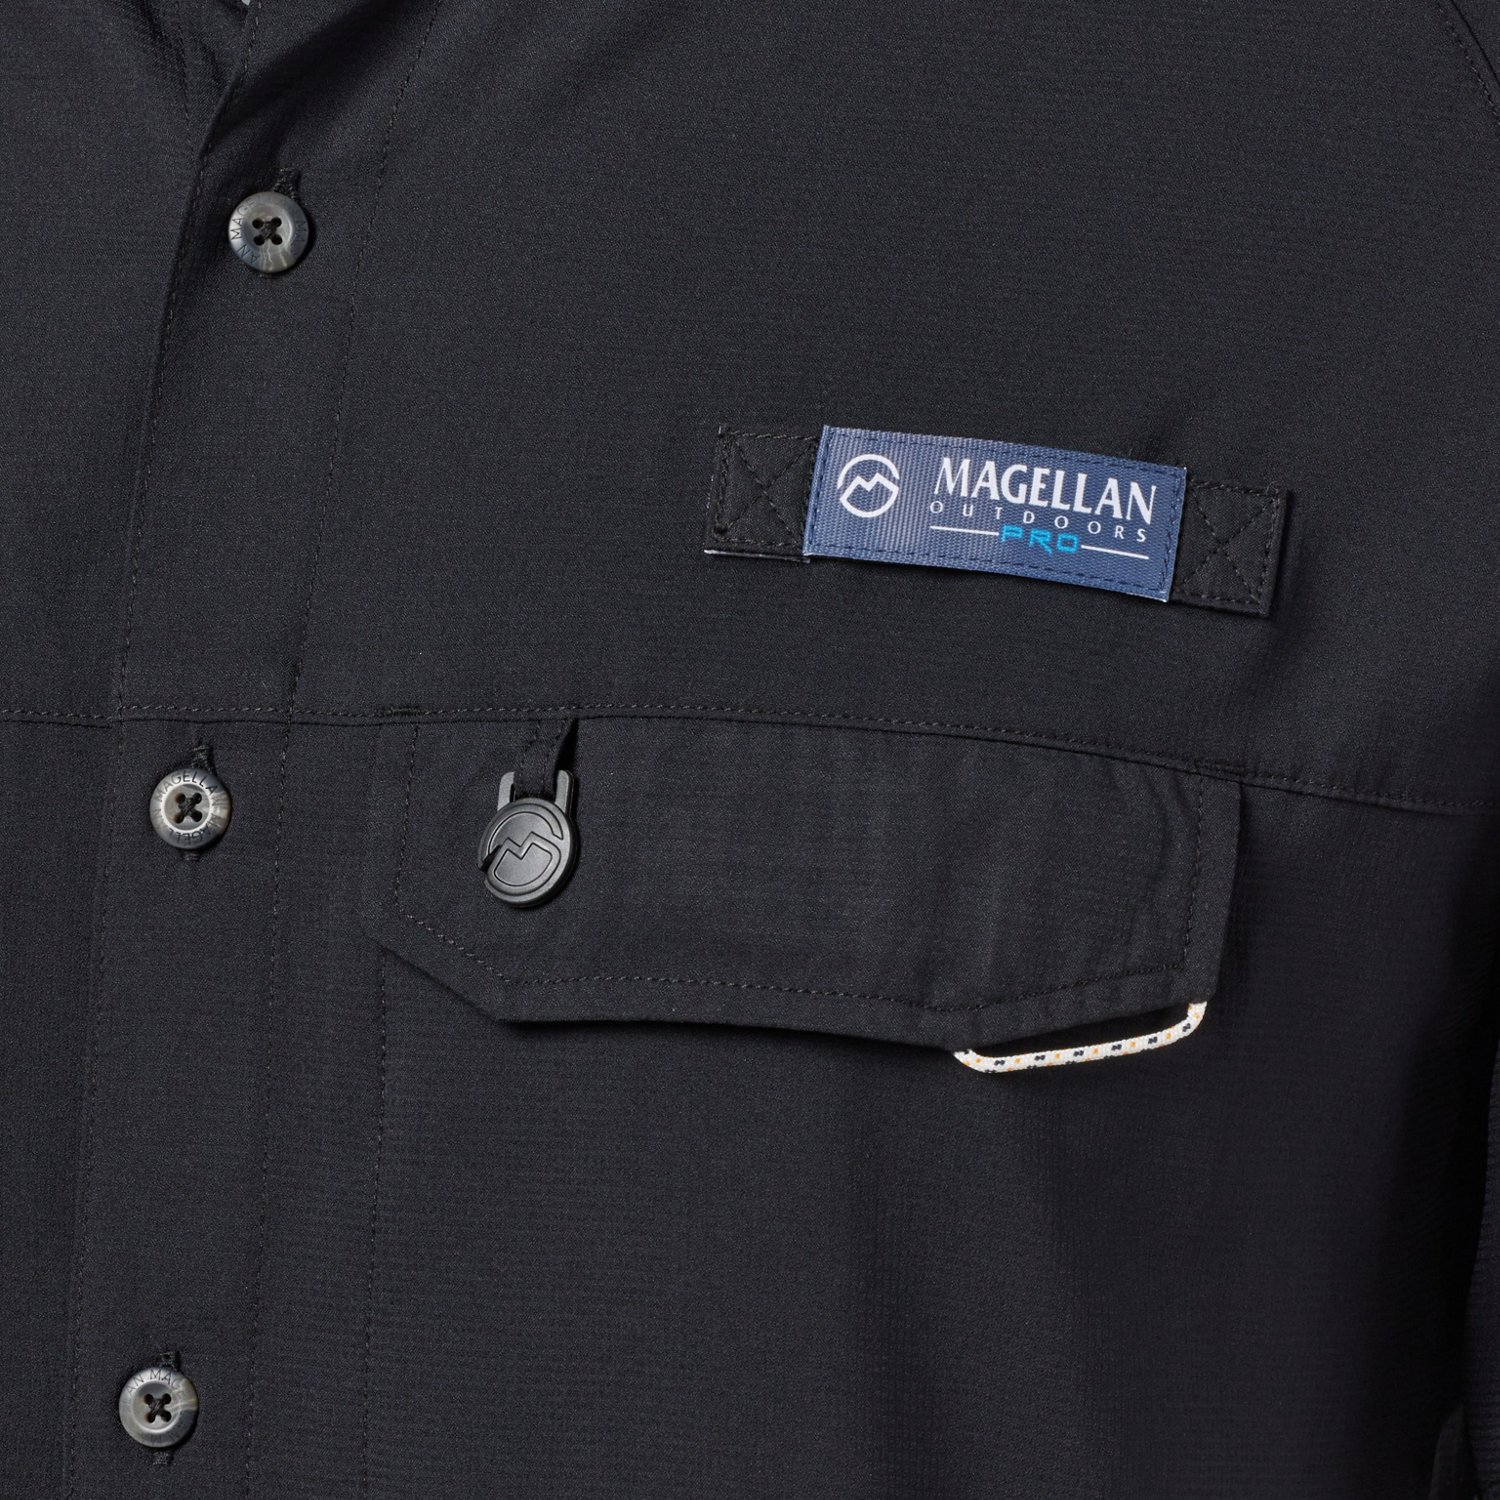 Magellan outdoors button shirt - Gem